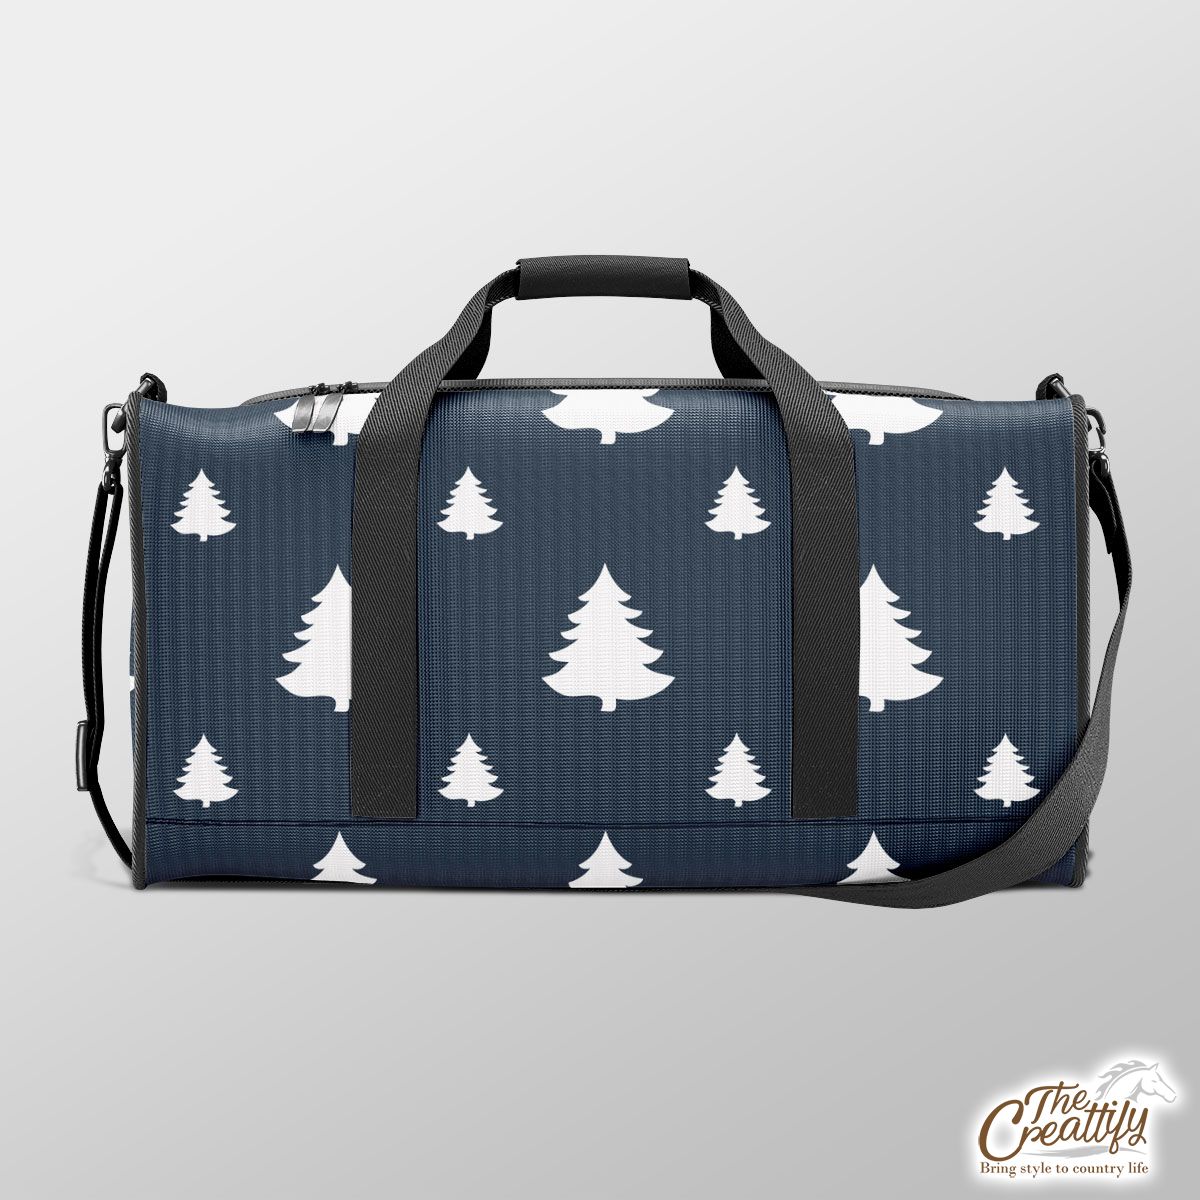 Pine Tree Sillhouette Pattern Duffle Bag